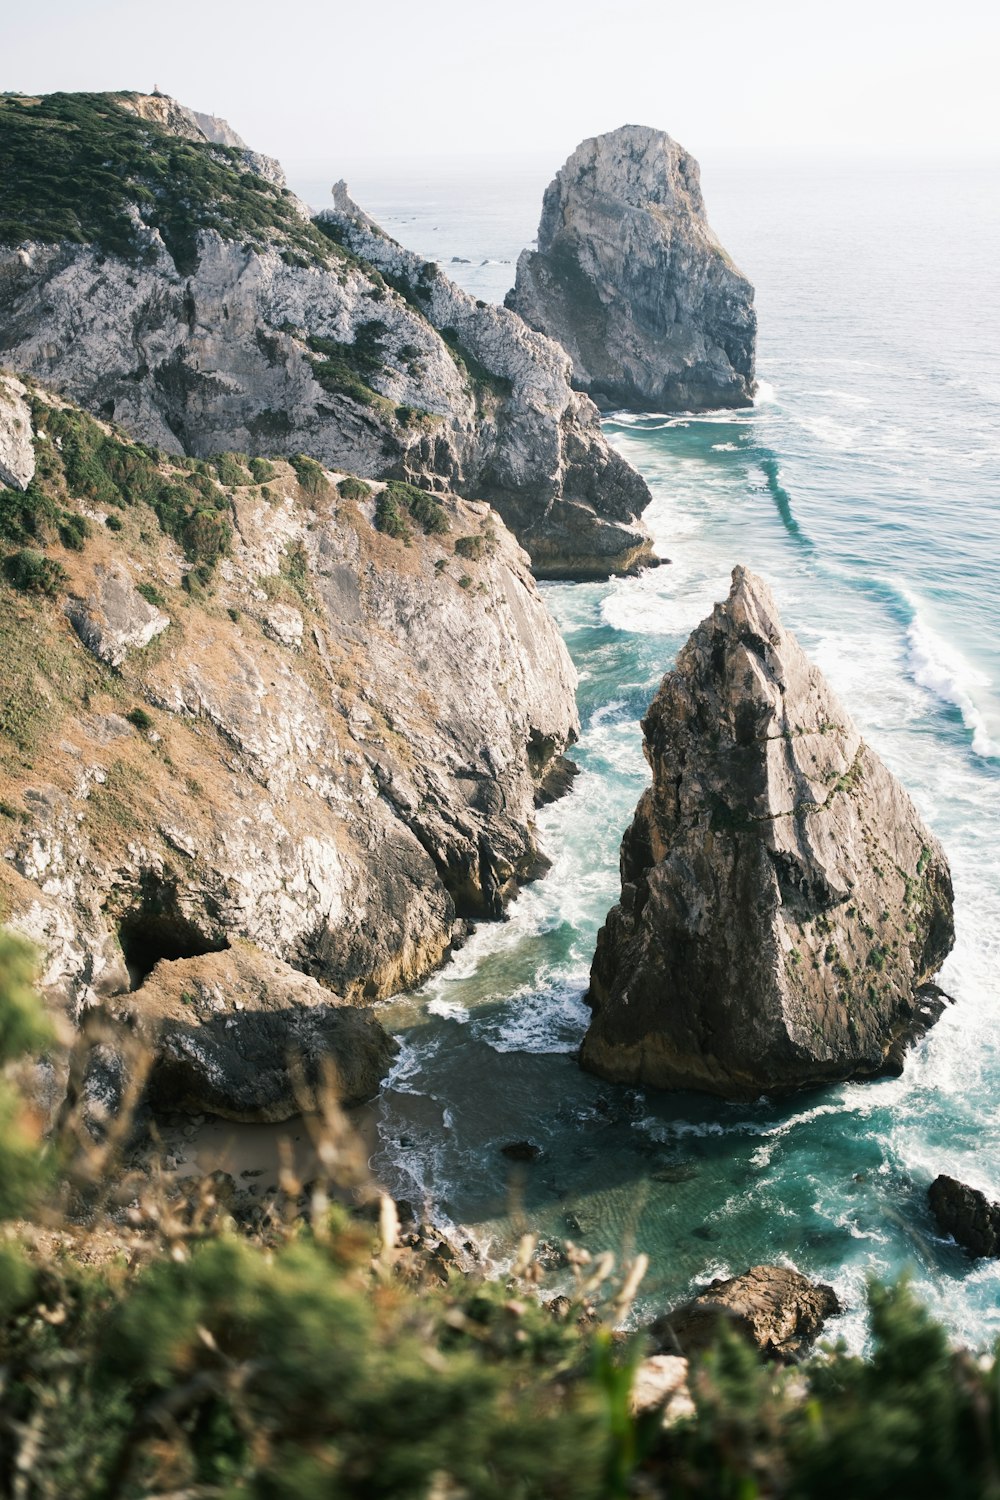 Una vista de un cuerpo de agua cerca de unas rocas